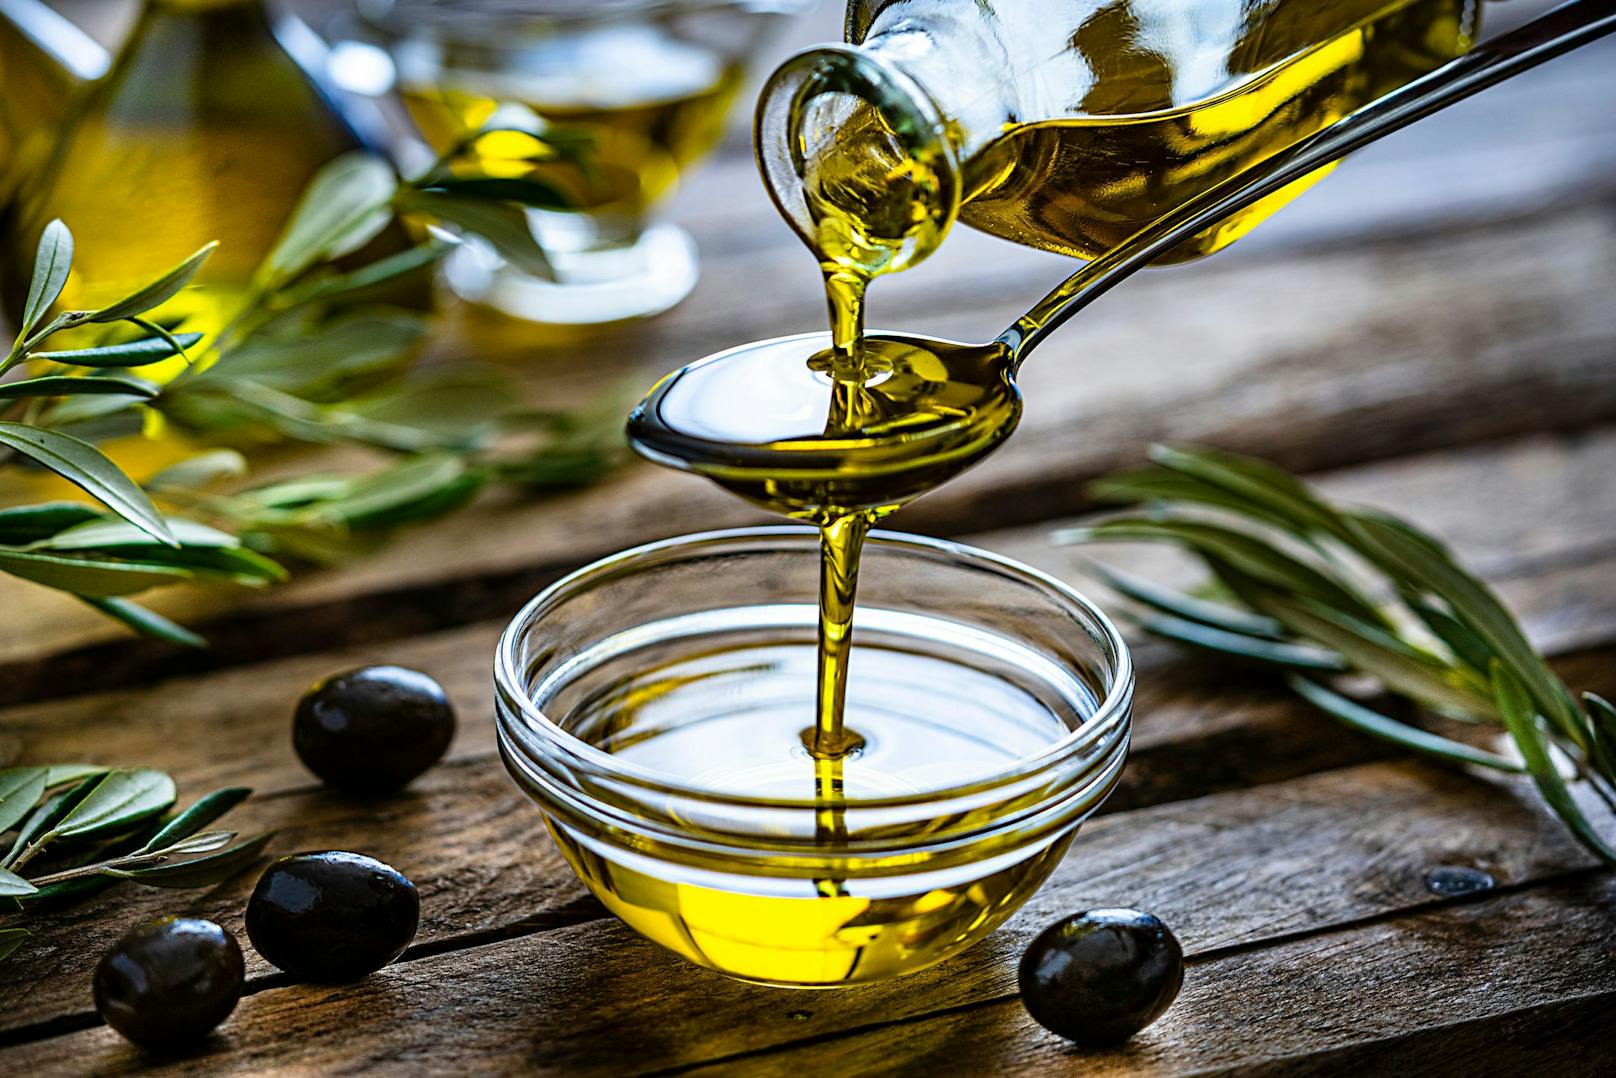 <strong>Olivenöl</strong> schmeckt nicht nur uns Menschen. Es steckt voller Antioxidantien, die das Immunsystem deines Hundes stärken und ein paar Tropfen ins Fell macht es schön glänzelnd. Hier sollte man lediglich bei der Qualität aufpassen - denn Olivenöl ist nicht gleich Olivenöl. 